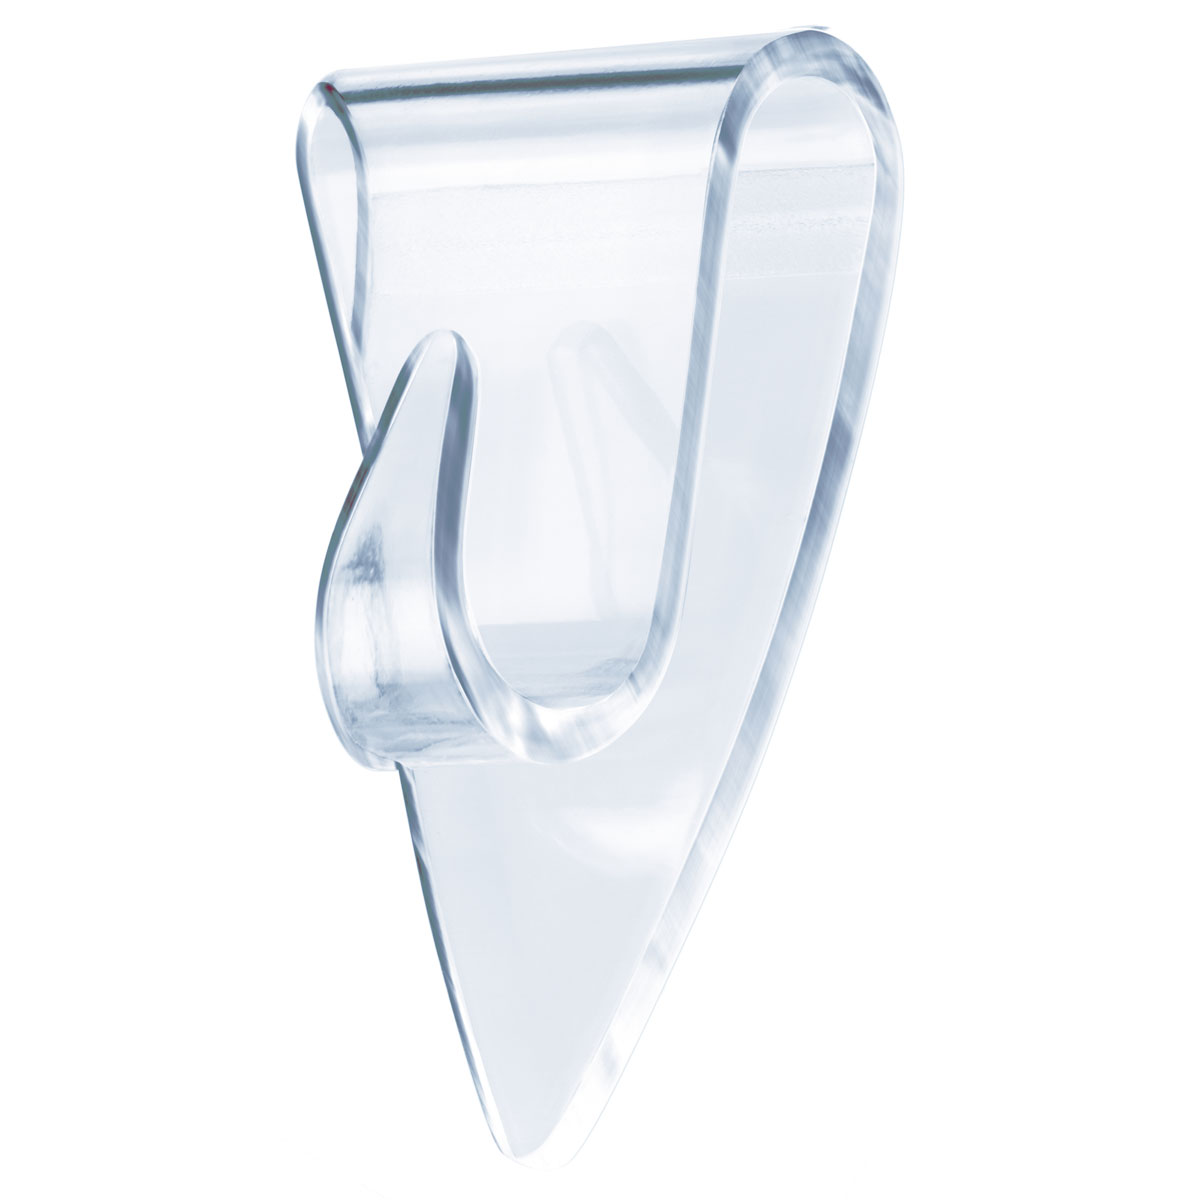 Klebehaken transparent Glas, 5 Stück, Traglast 5 x 0,2 kg        